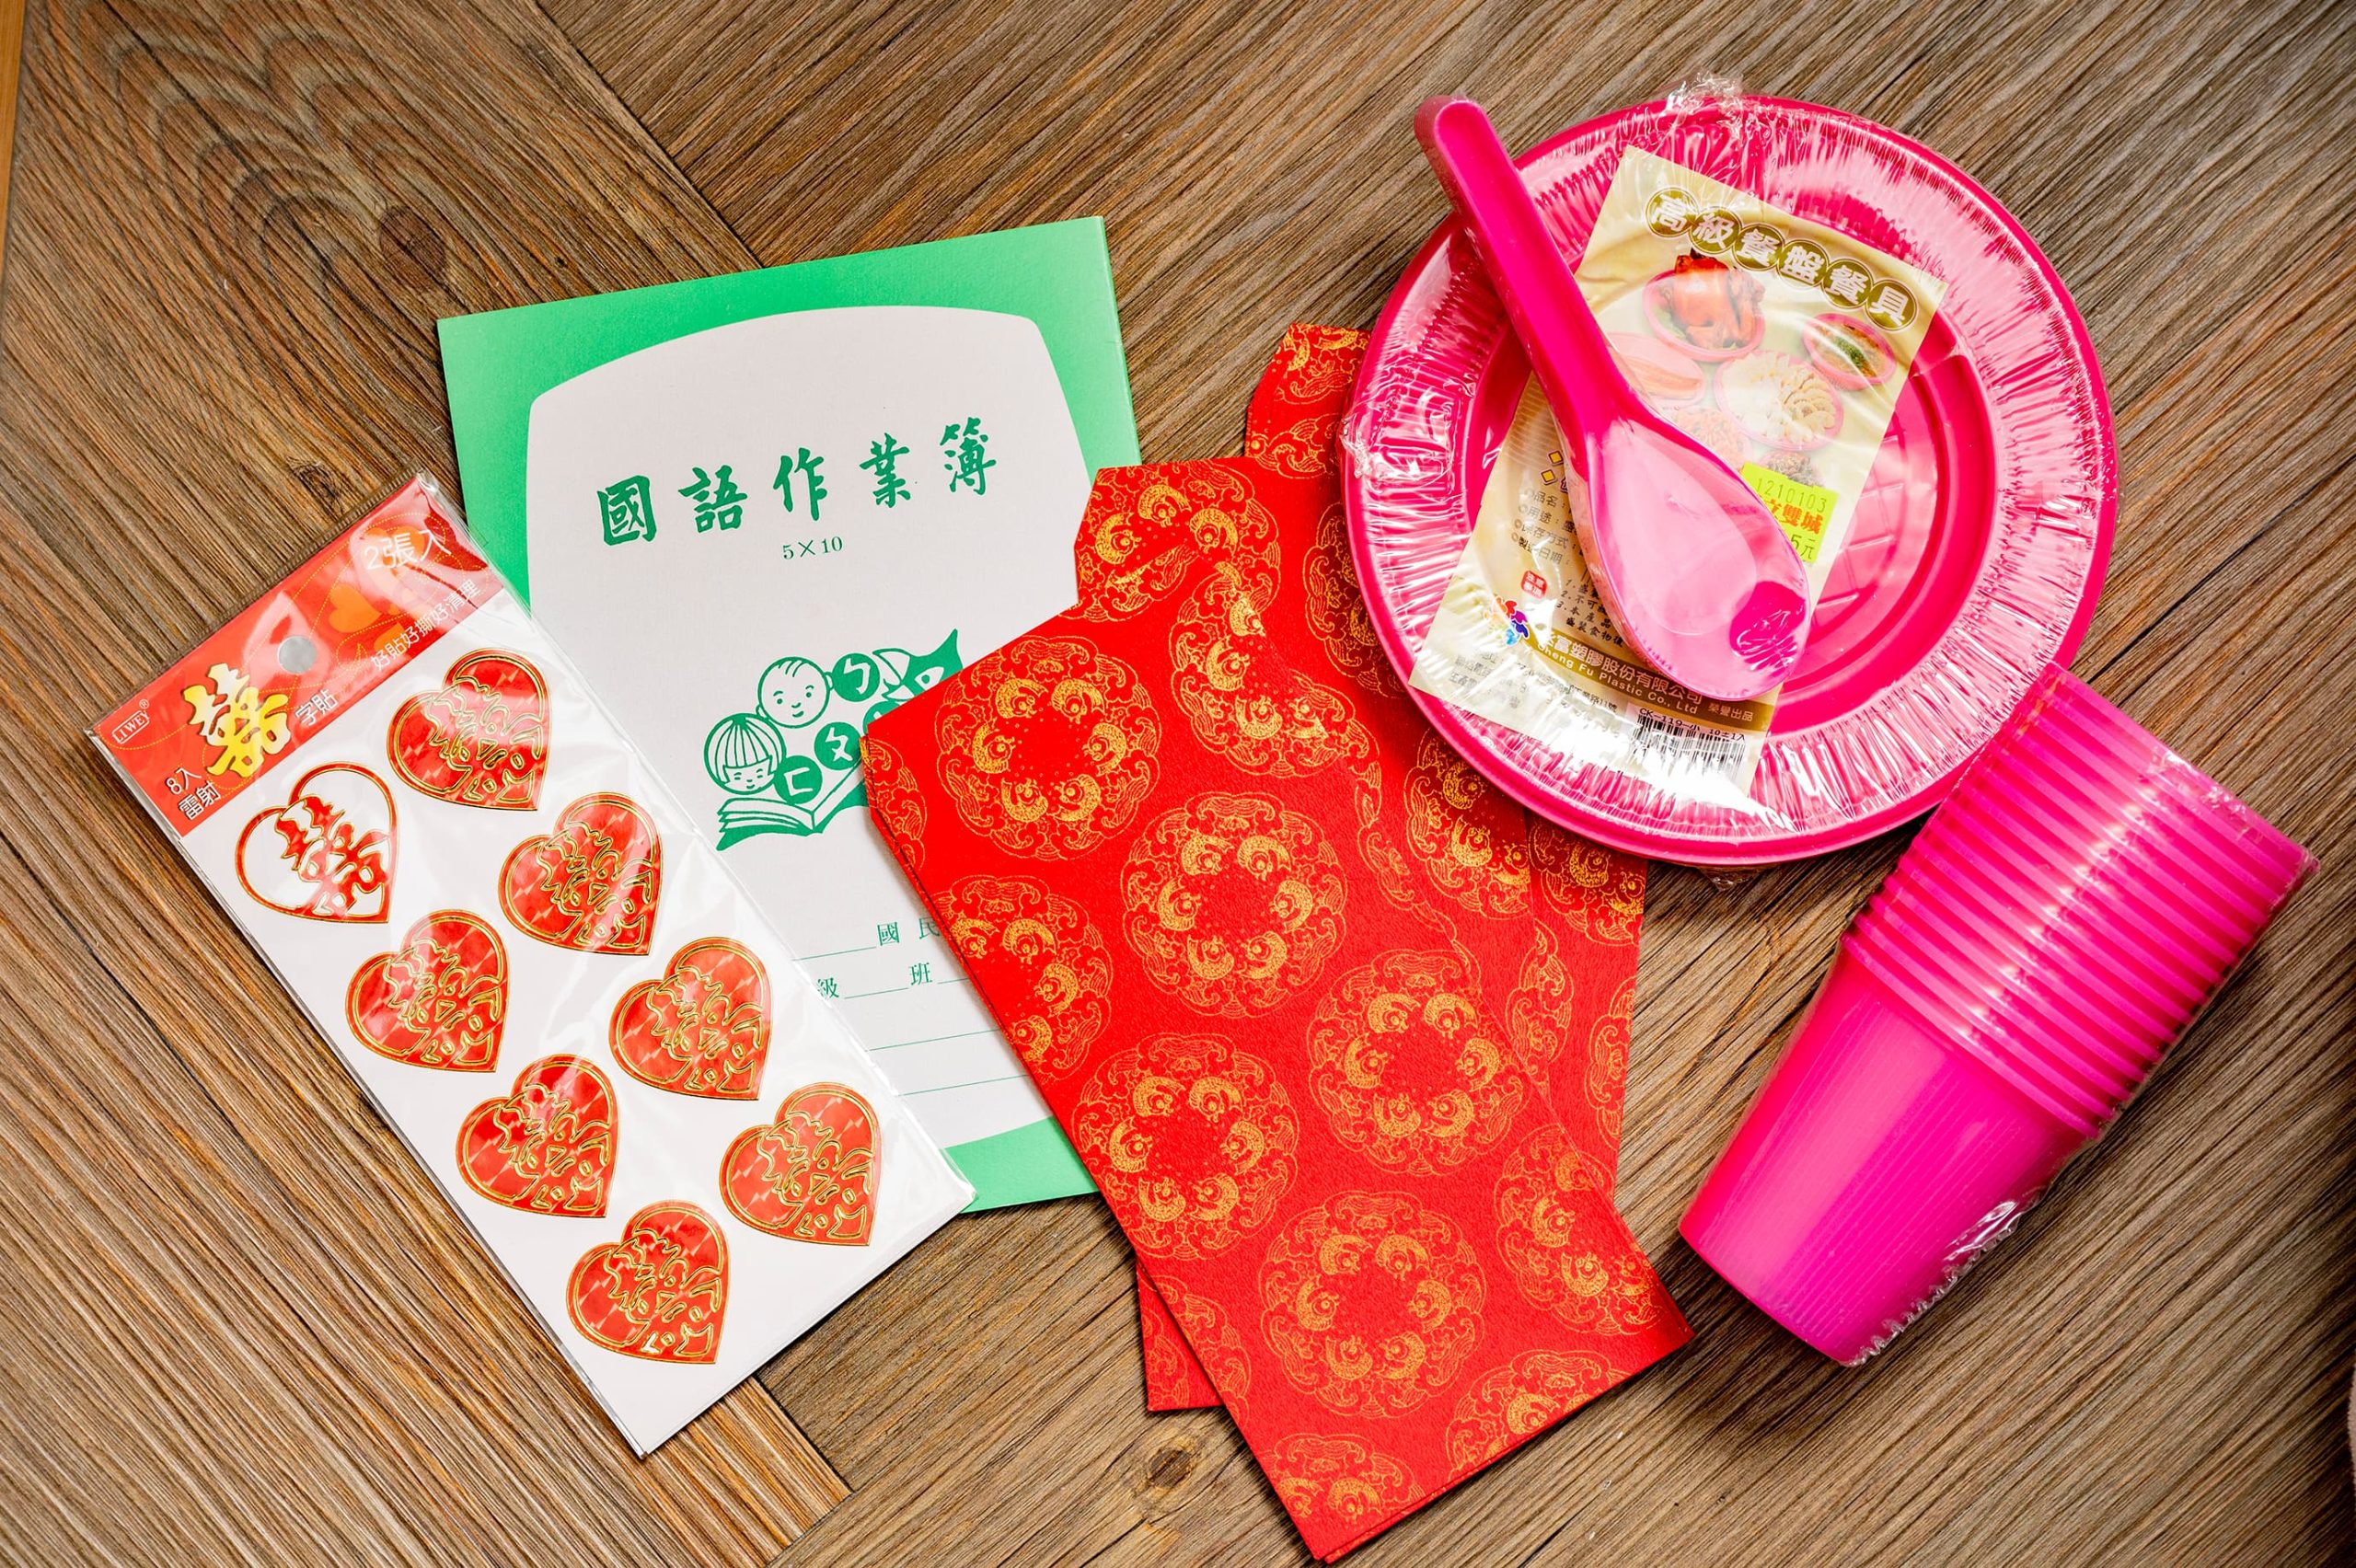 結婚式用のシールや台湾の学校で使われている漢字練習帳、ピンクの使い捨て食器など、購入品の数々